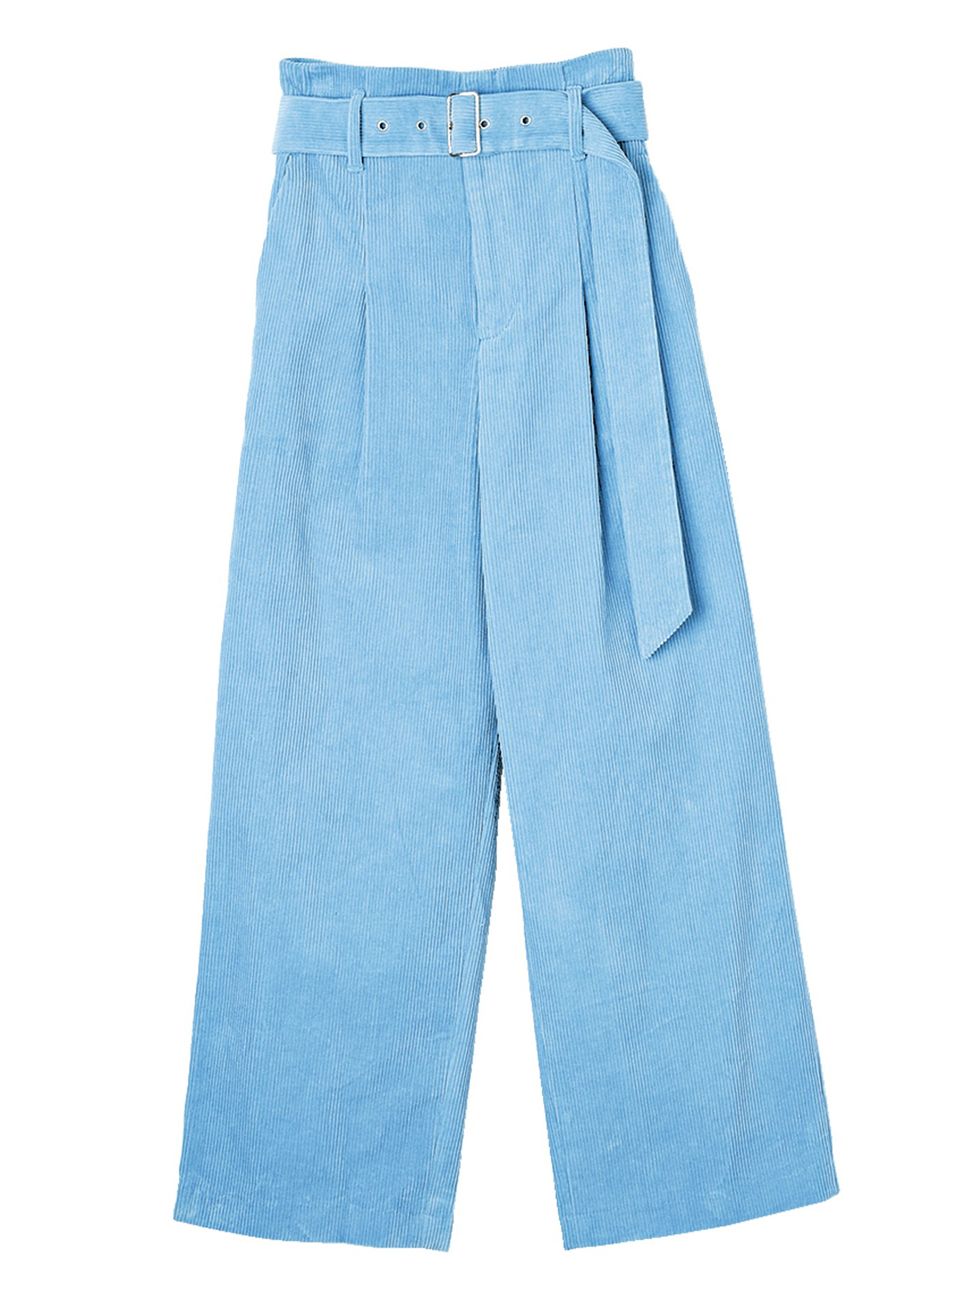 Blue, Denim, Textile, Jeans, Pocket, Electric blue, Aqua, Azure, Cobalt blue, Fashion design, 